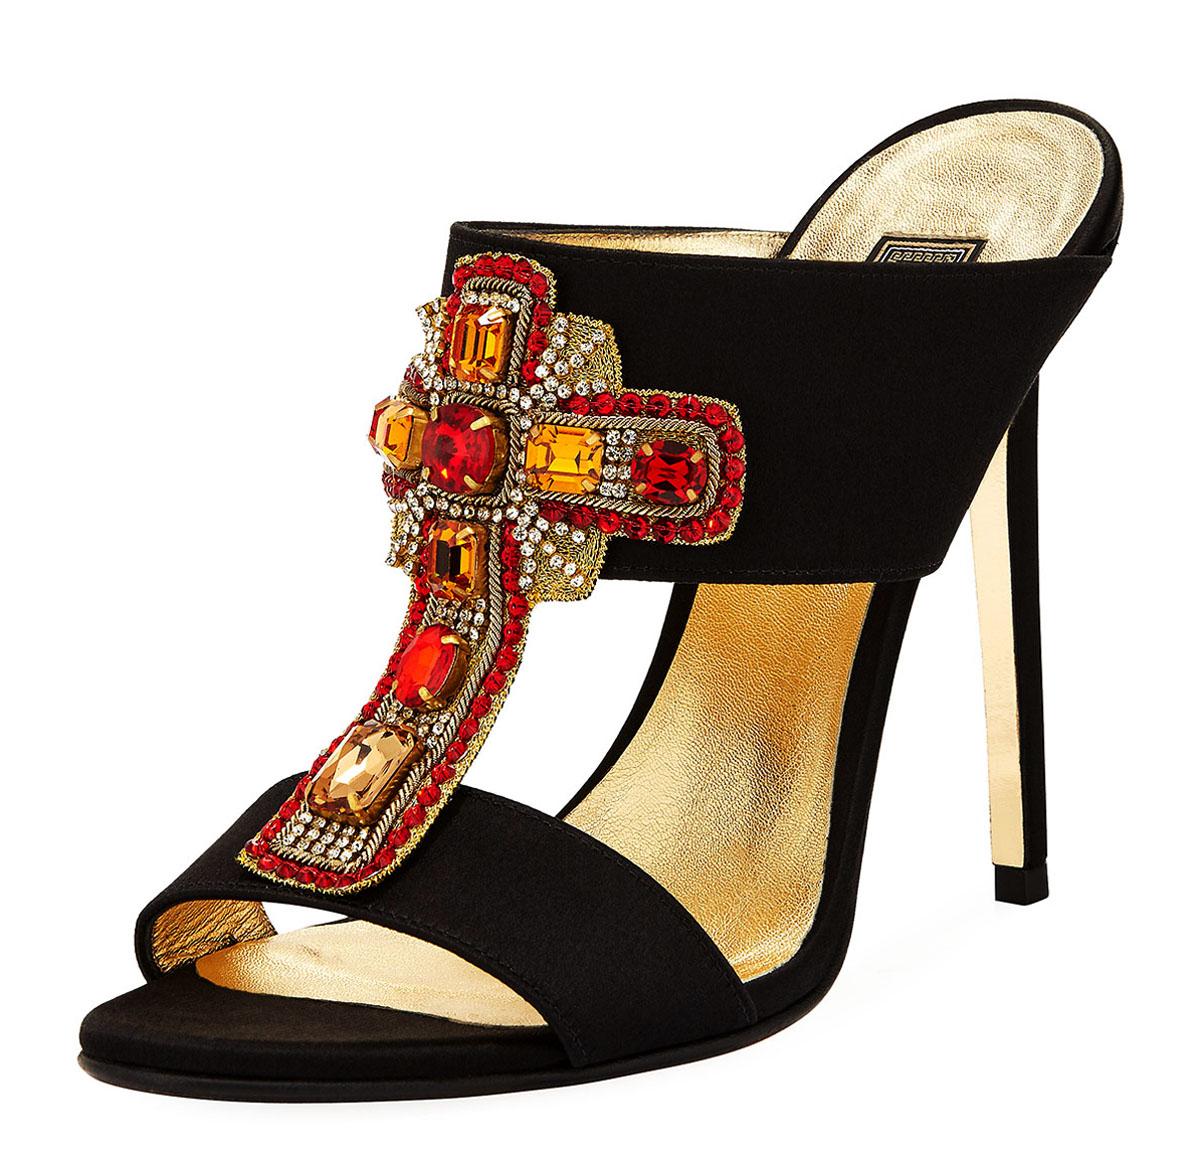 New Versace Runway Crystal Embellished Cross Black Satin Heel Mule Sandals  38 8